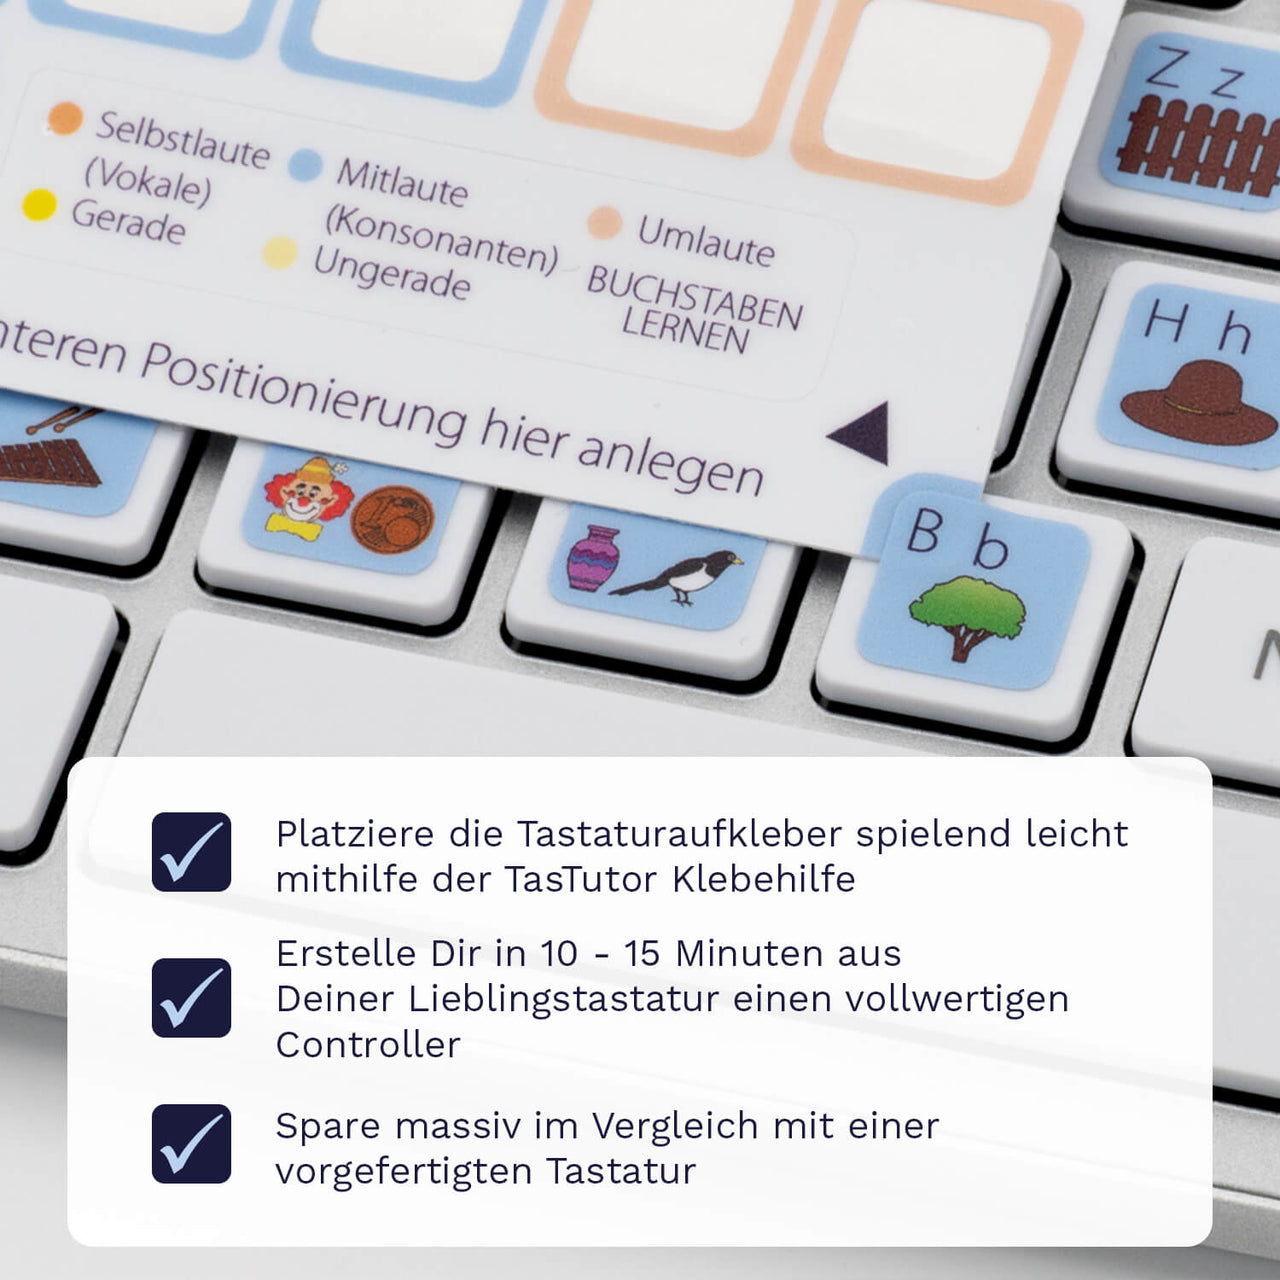 Buchstaben / Zahlen lernen Tastaturaufkleber Klebehilfe für PC/MAC mit deutschen Shortcuts/Tastaturbefehlen/Tastaturkürzeln | TasTutor